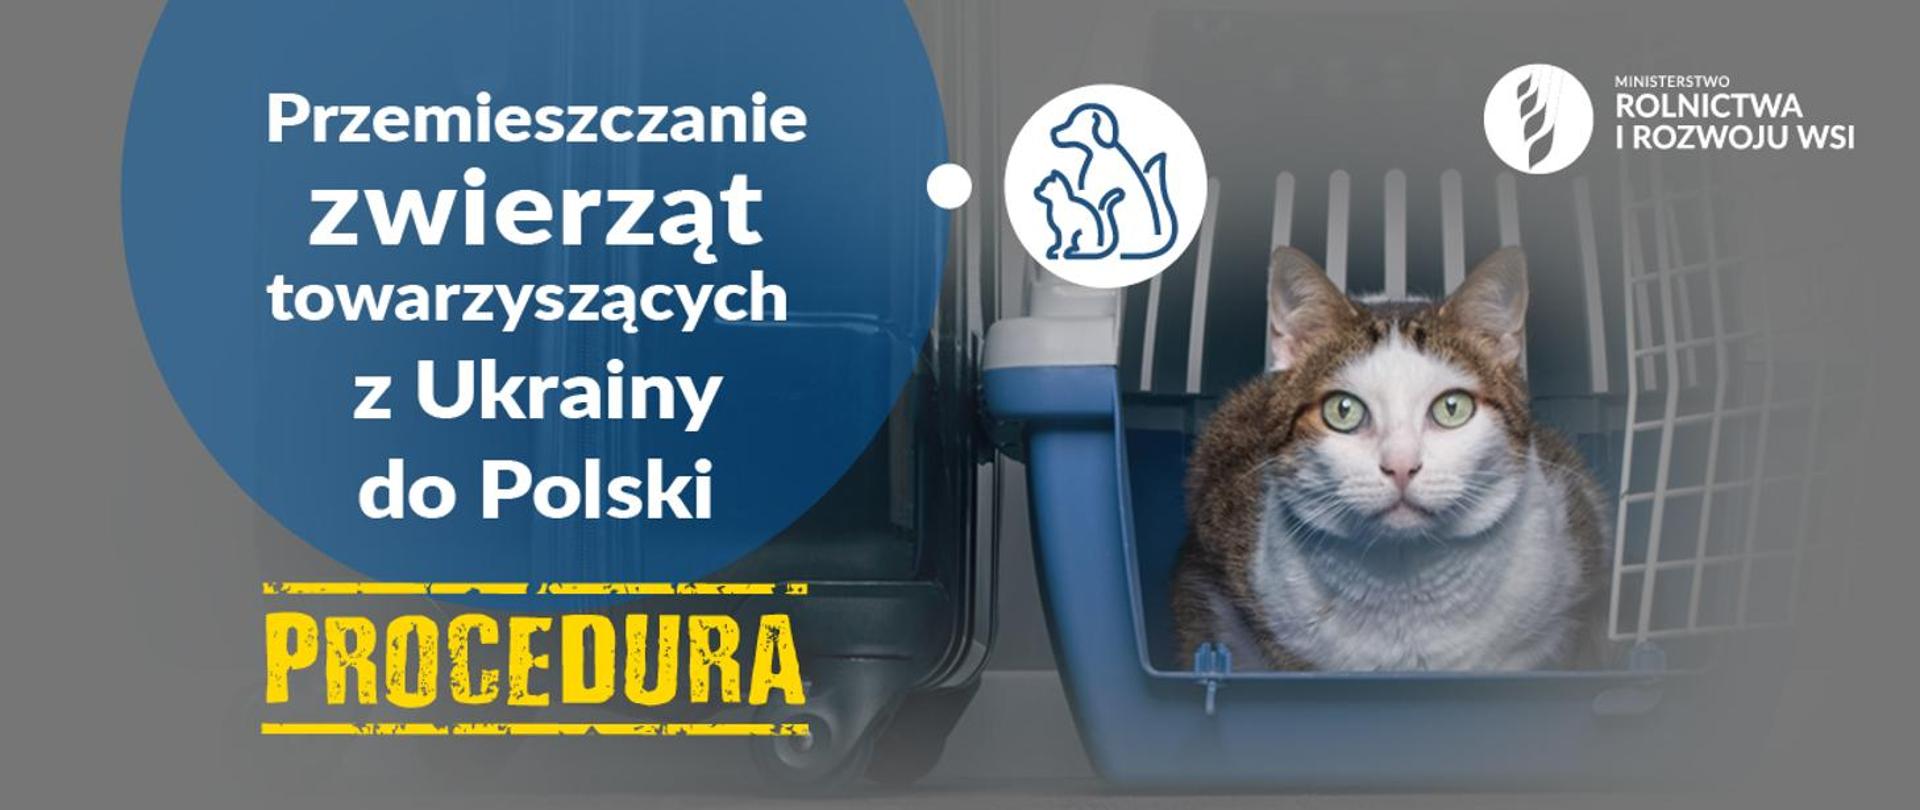 Plakat: Przemieszczanie zwierząt towarzyszących z Ukrainy do Polski.